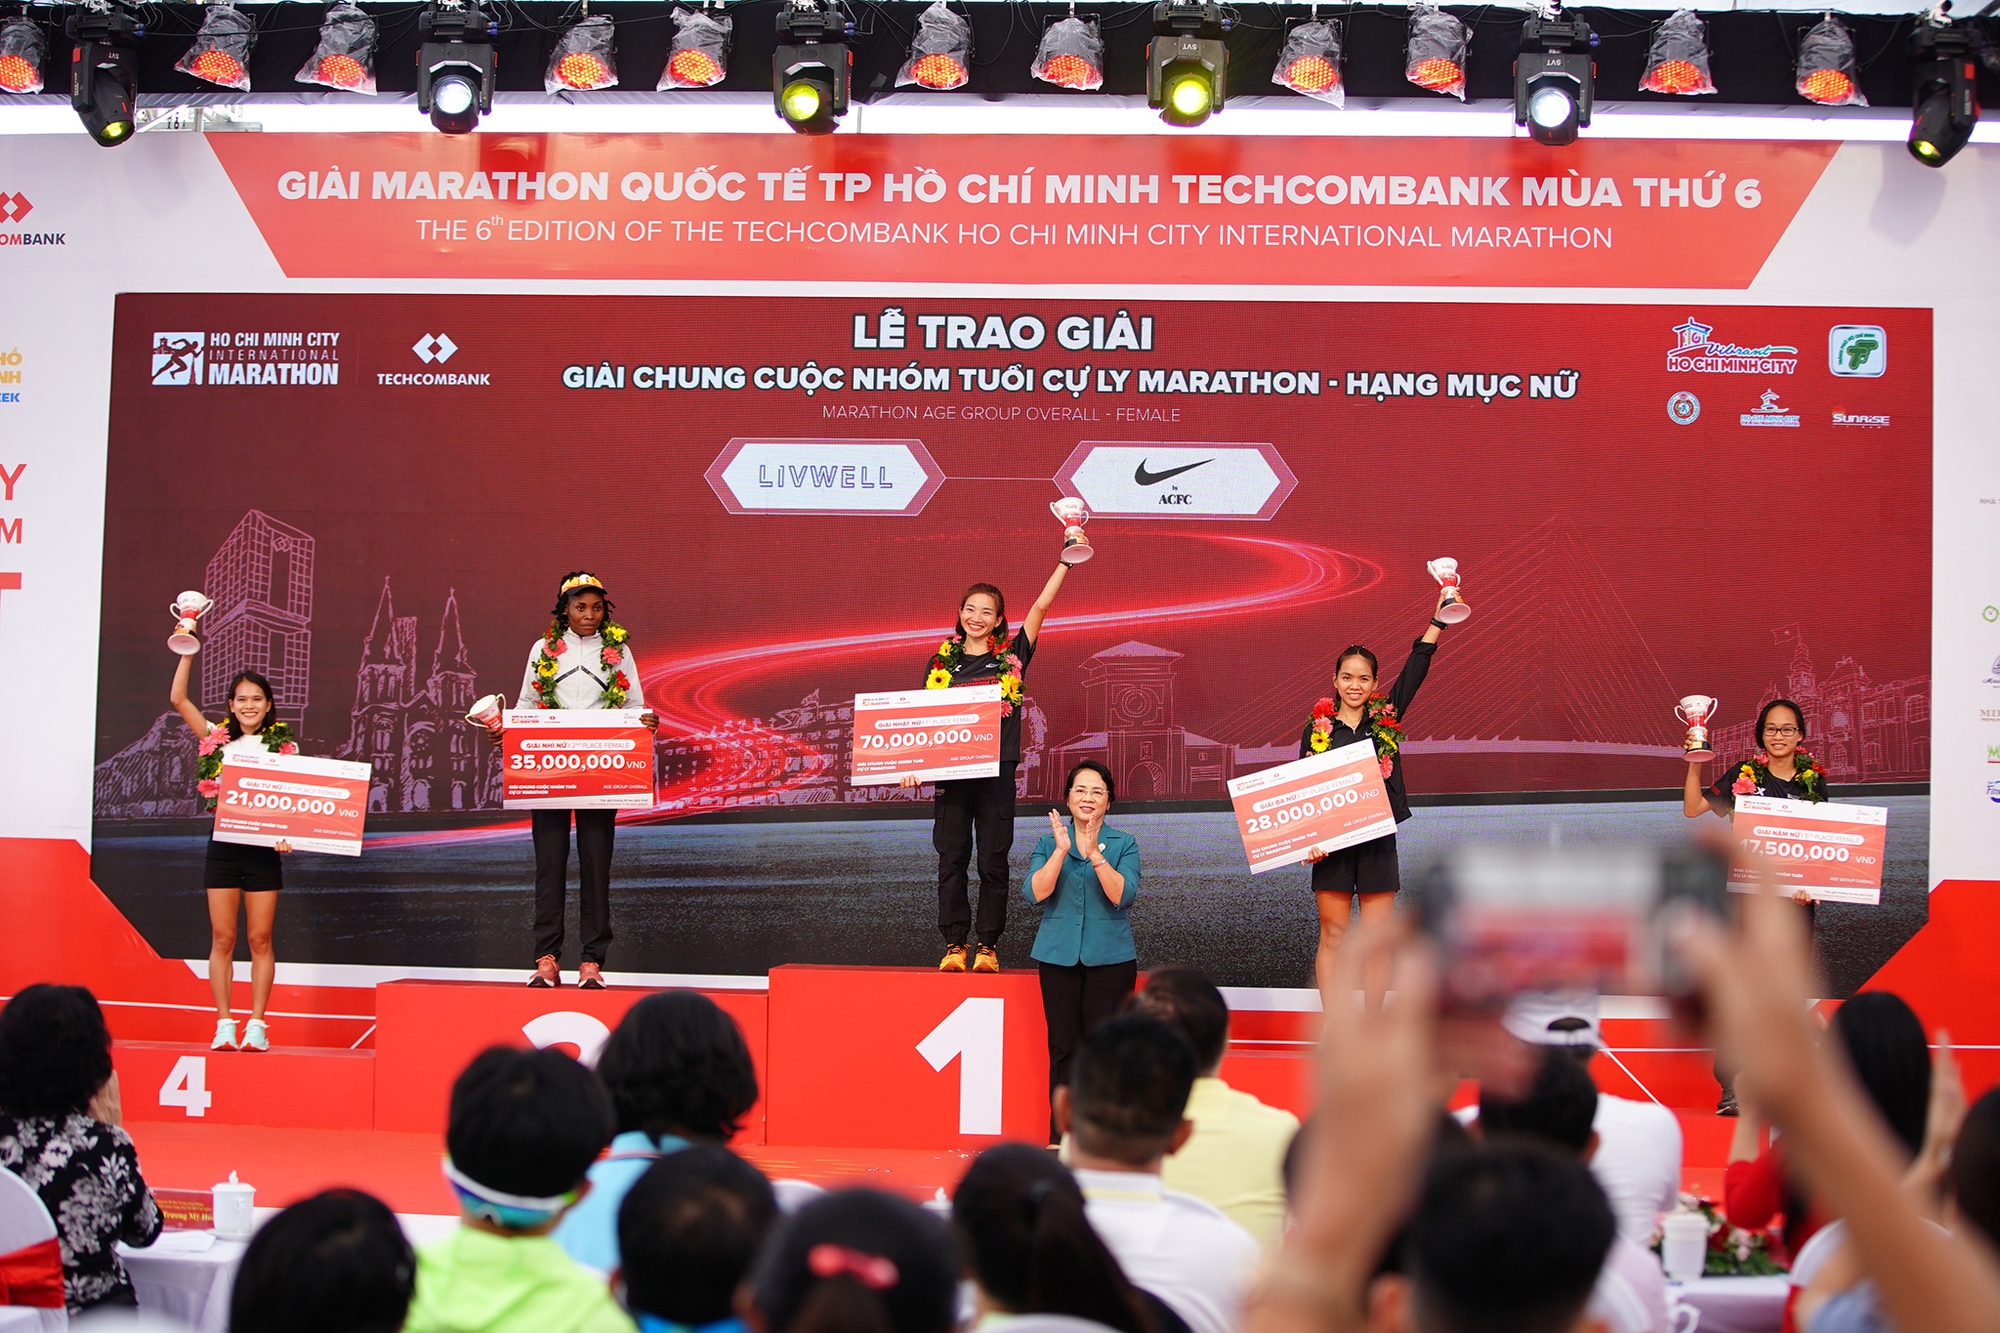 Các nữ Runner Việt Nam vượt trội trong giải Marathon Quốc tế thành phố Hồ Chí Minh Techcombank mùa thứ 6- Ảnh 11.